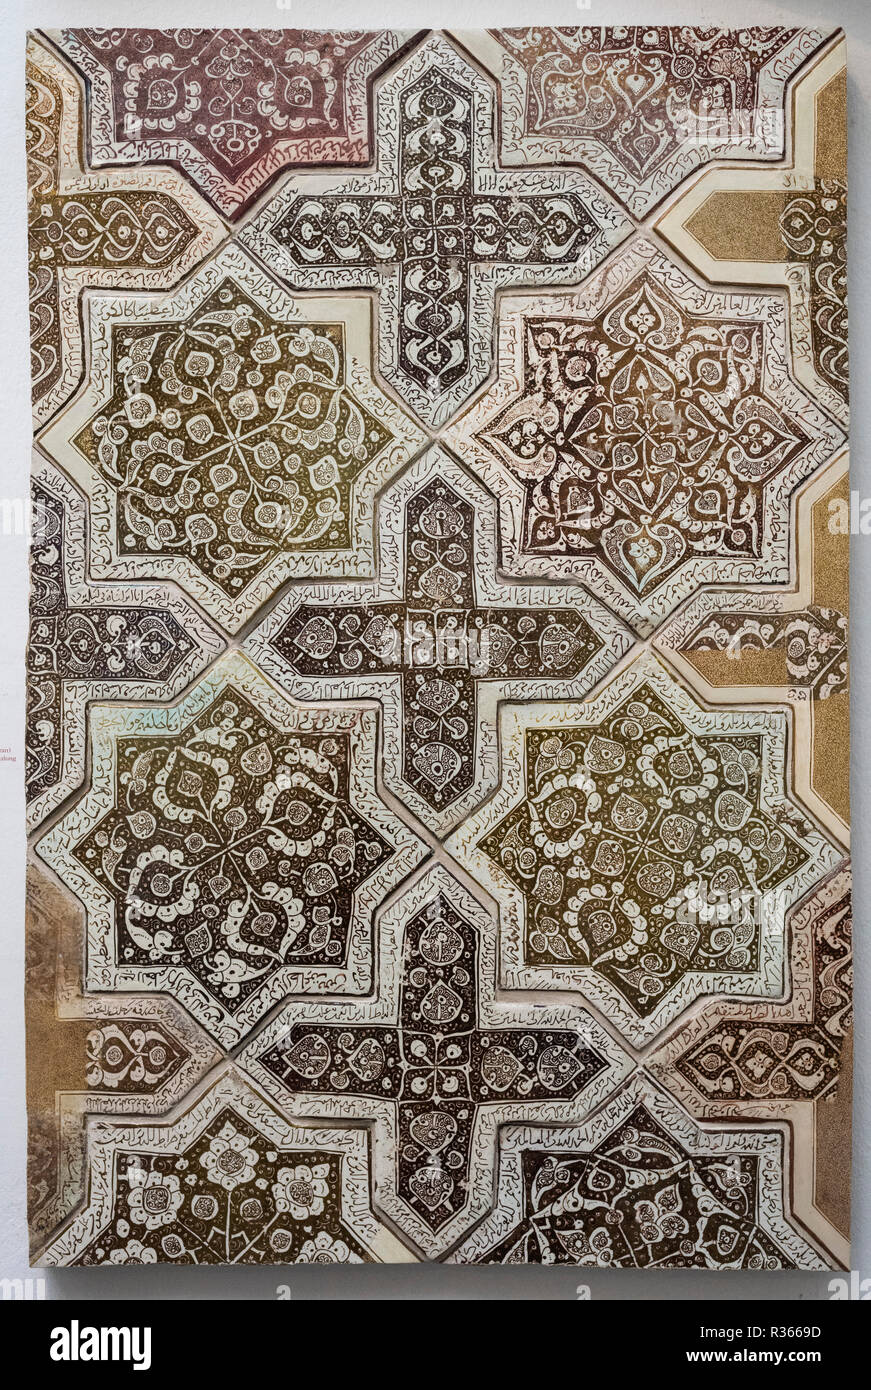 Berlino. Germania. Pergamon Museum. Fregio geometrico di ceramica invetriata piastrelle a muro con otto stelle appuntita (octagram) e attraversa e iscrizioni da Foto Stock